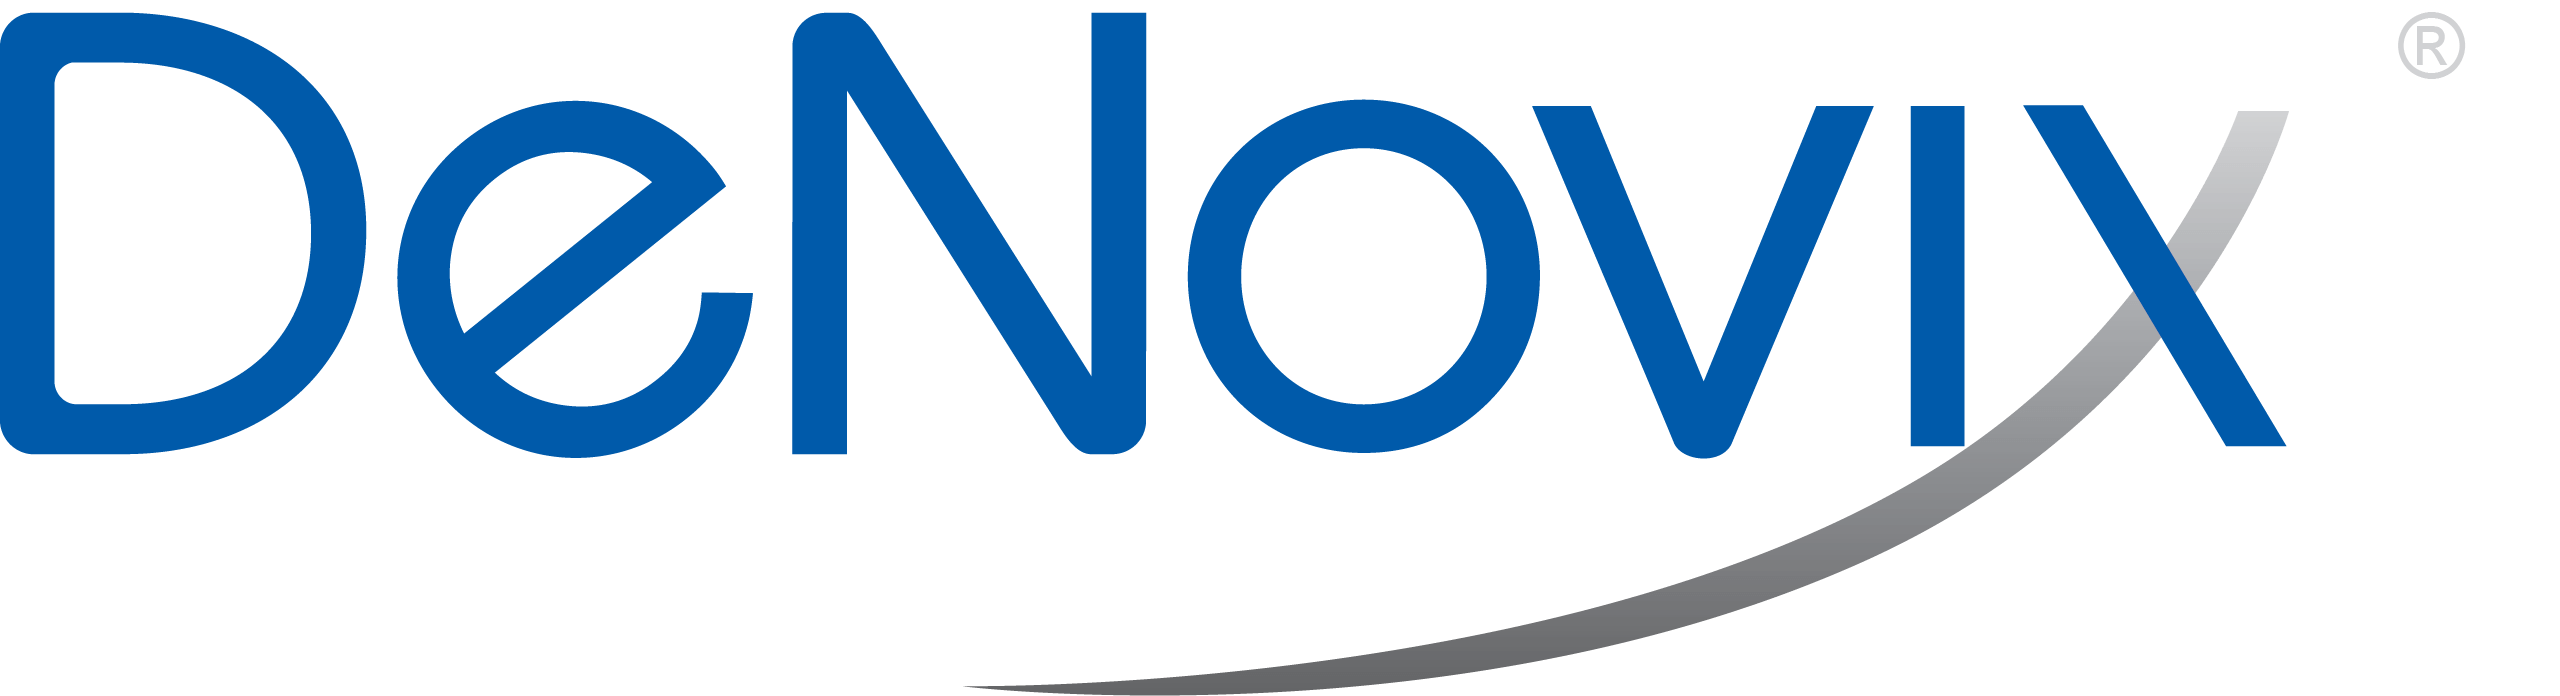 A blue and gray logo representing DeNovix.